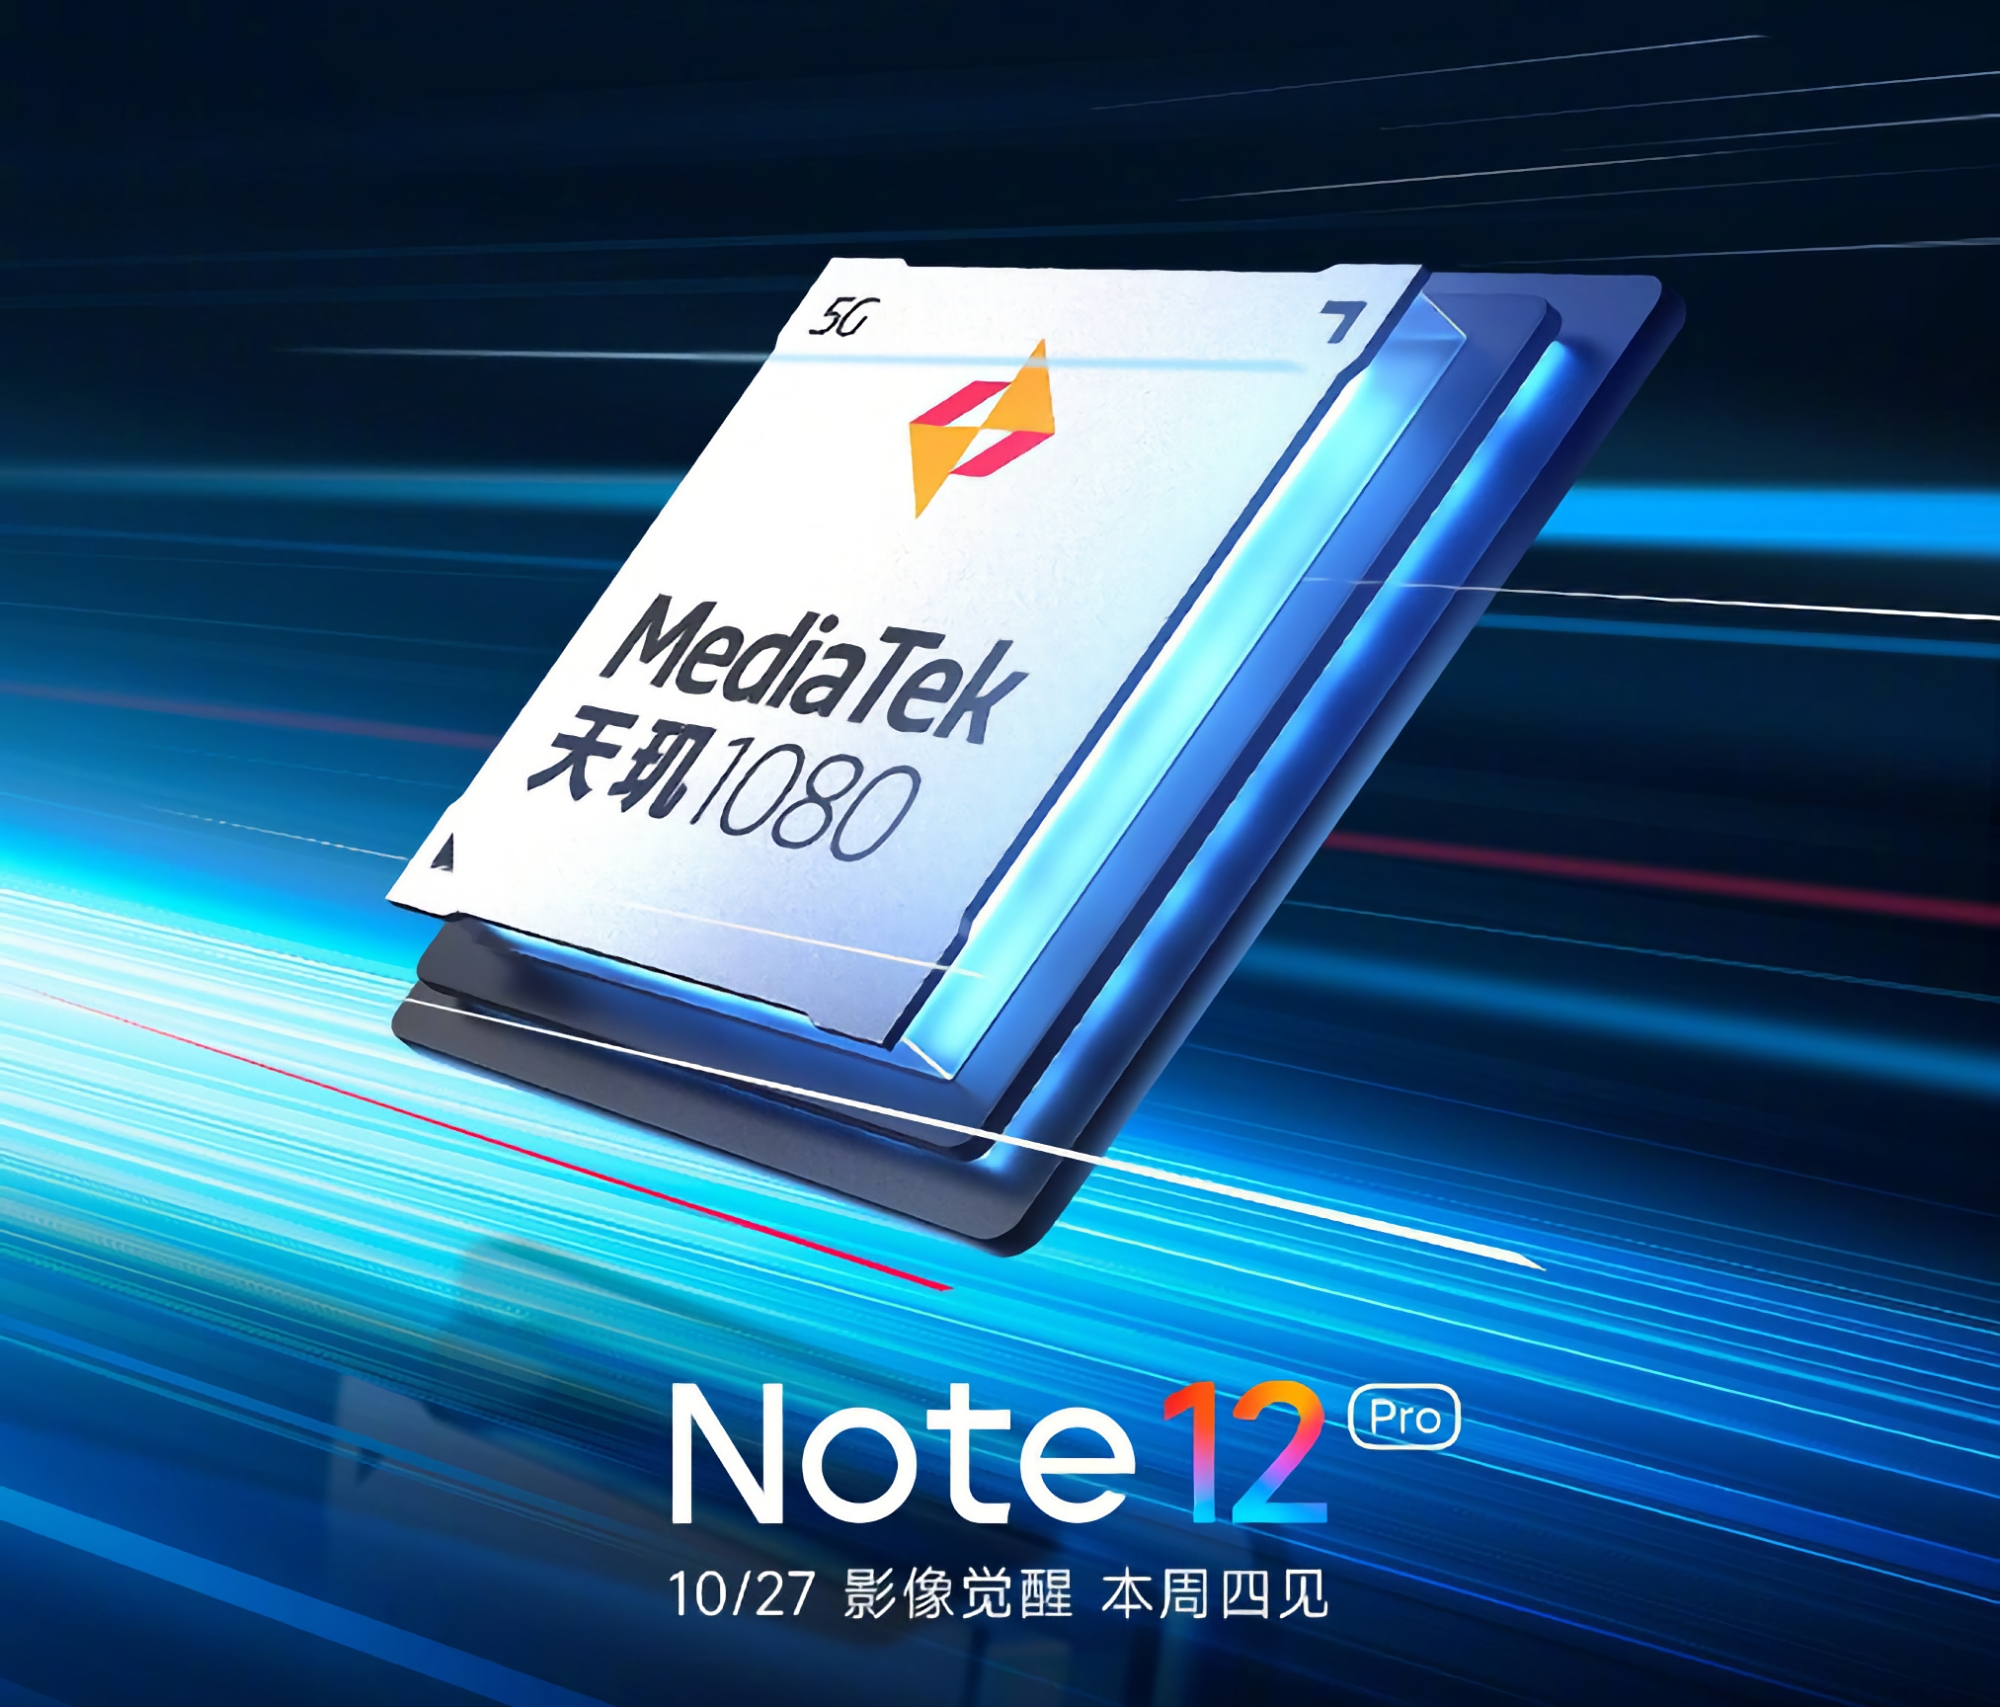 È ufficiale: Redmi Note 12 Pro sarà il primo smartphone al mondo a funzionare con il chip MediaTek Dimensity 1080